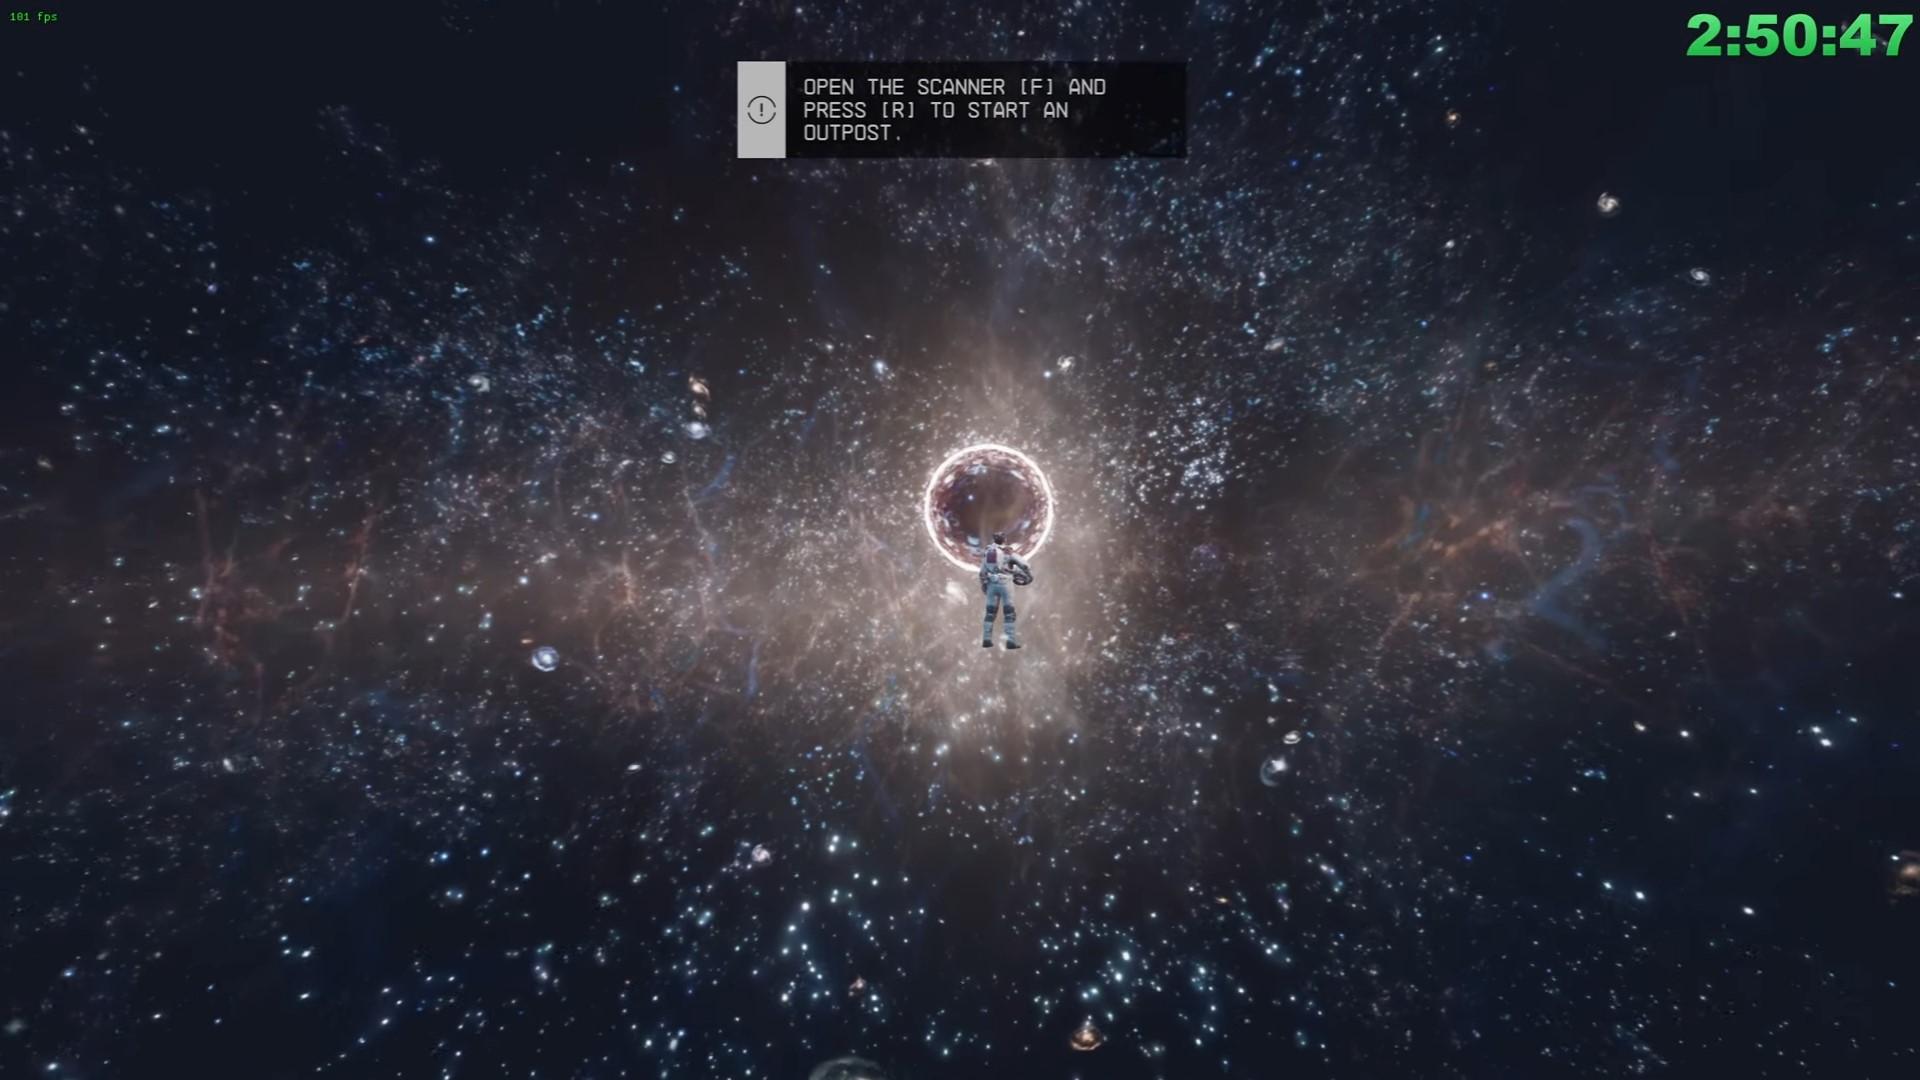 「スターフィールド」 ブラックホールの隣に立っている宇宙飛行士の遠景。